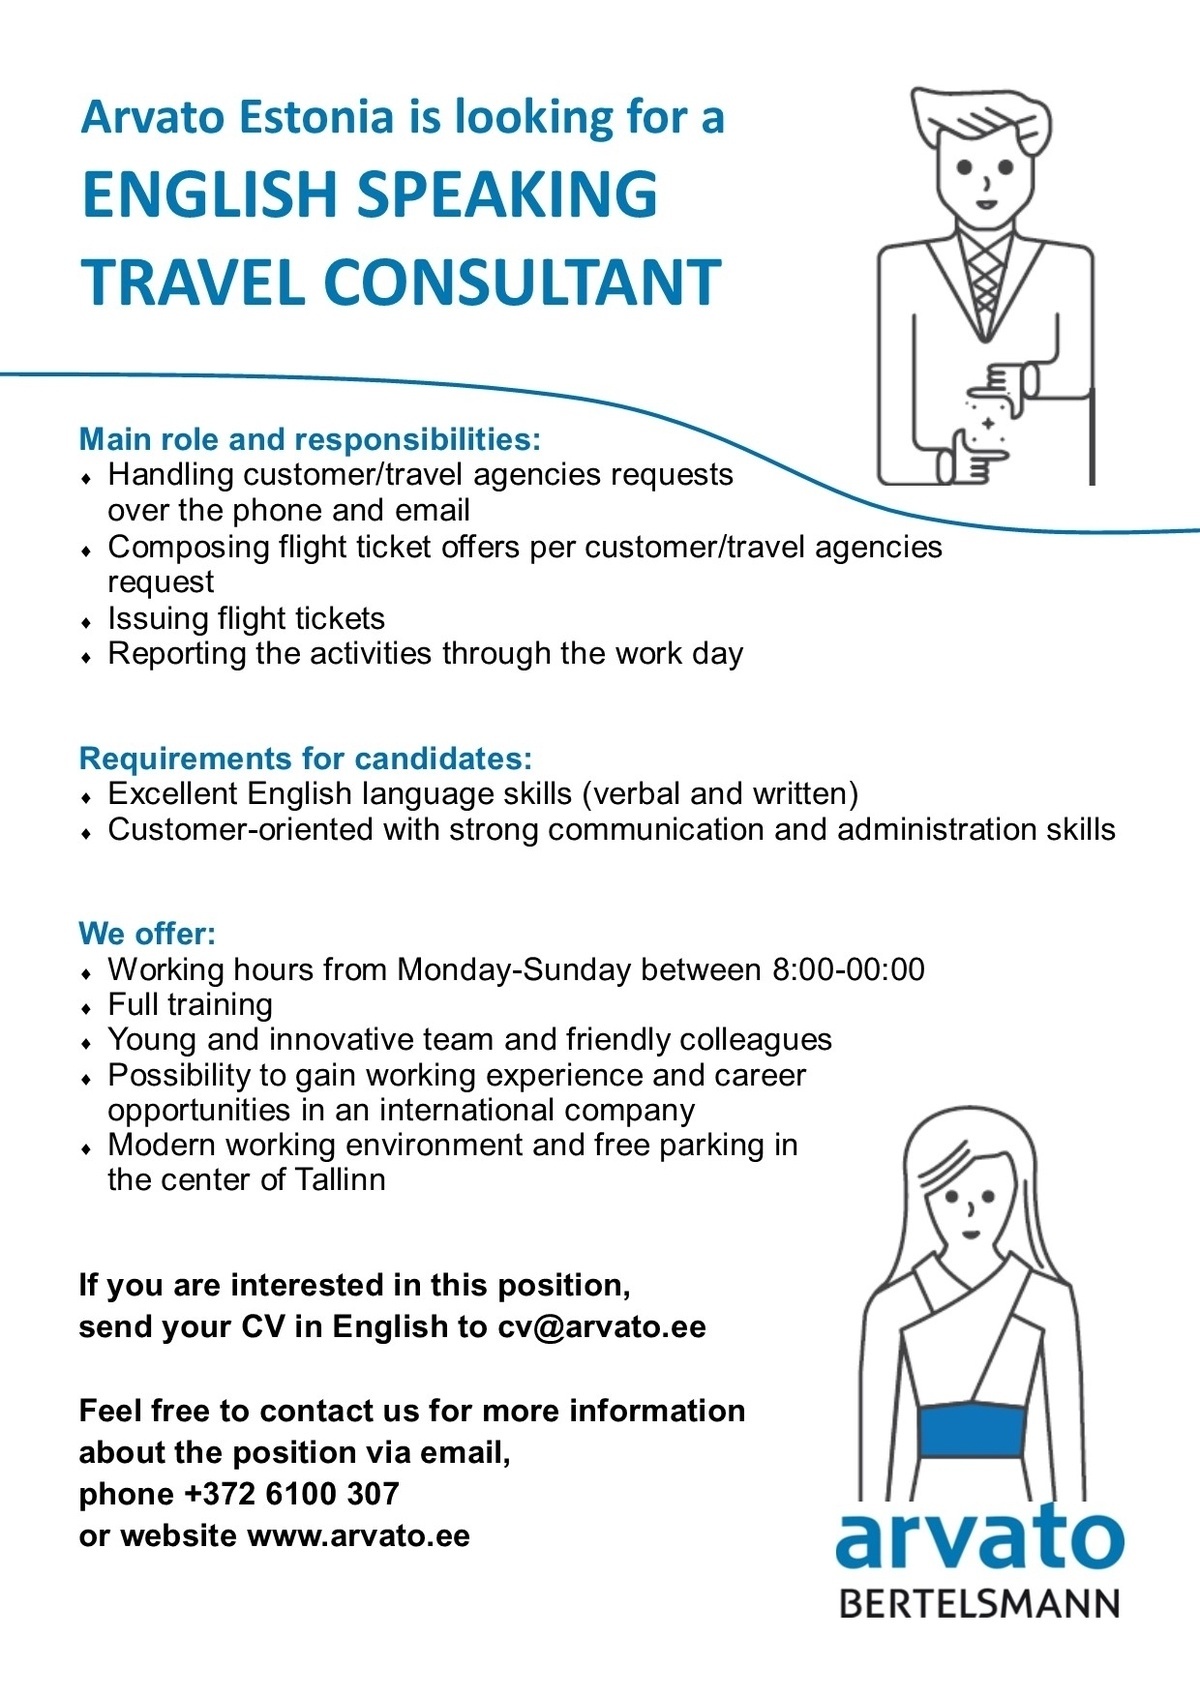 Arvato Services Estonia OÜ English Speaking Travel Consultant